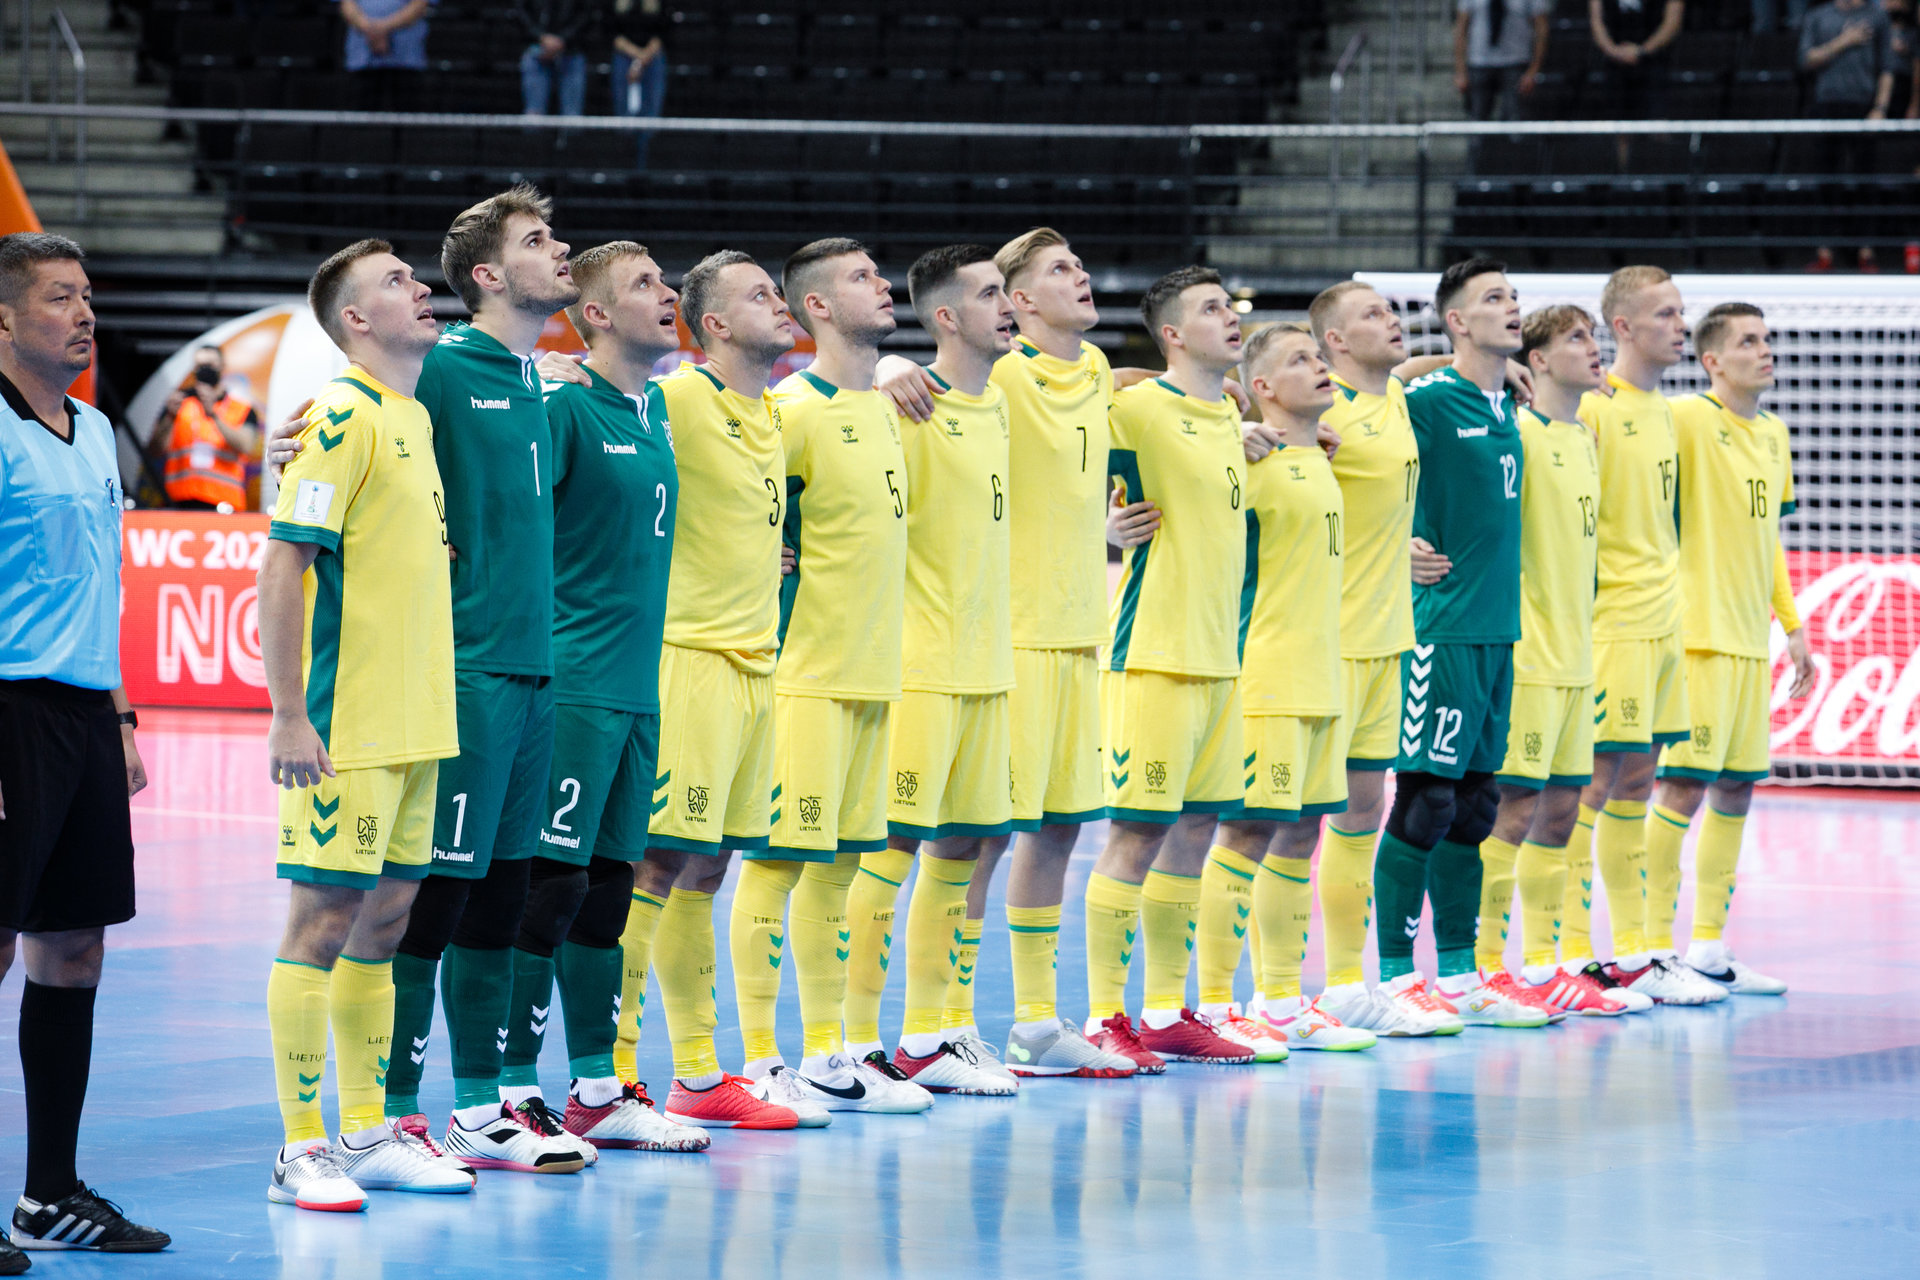 Pasaulio čempionato starte Lietuvos salės futbolo patyrė apmaudžią nesėkmę | Sportas 15min.lt